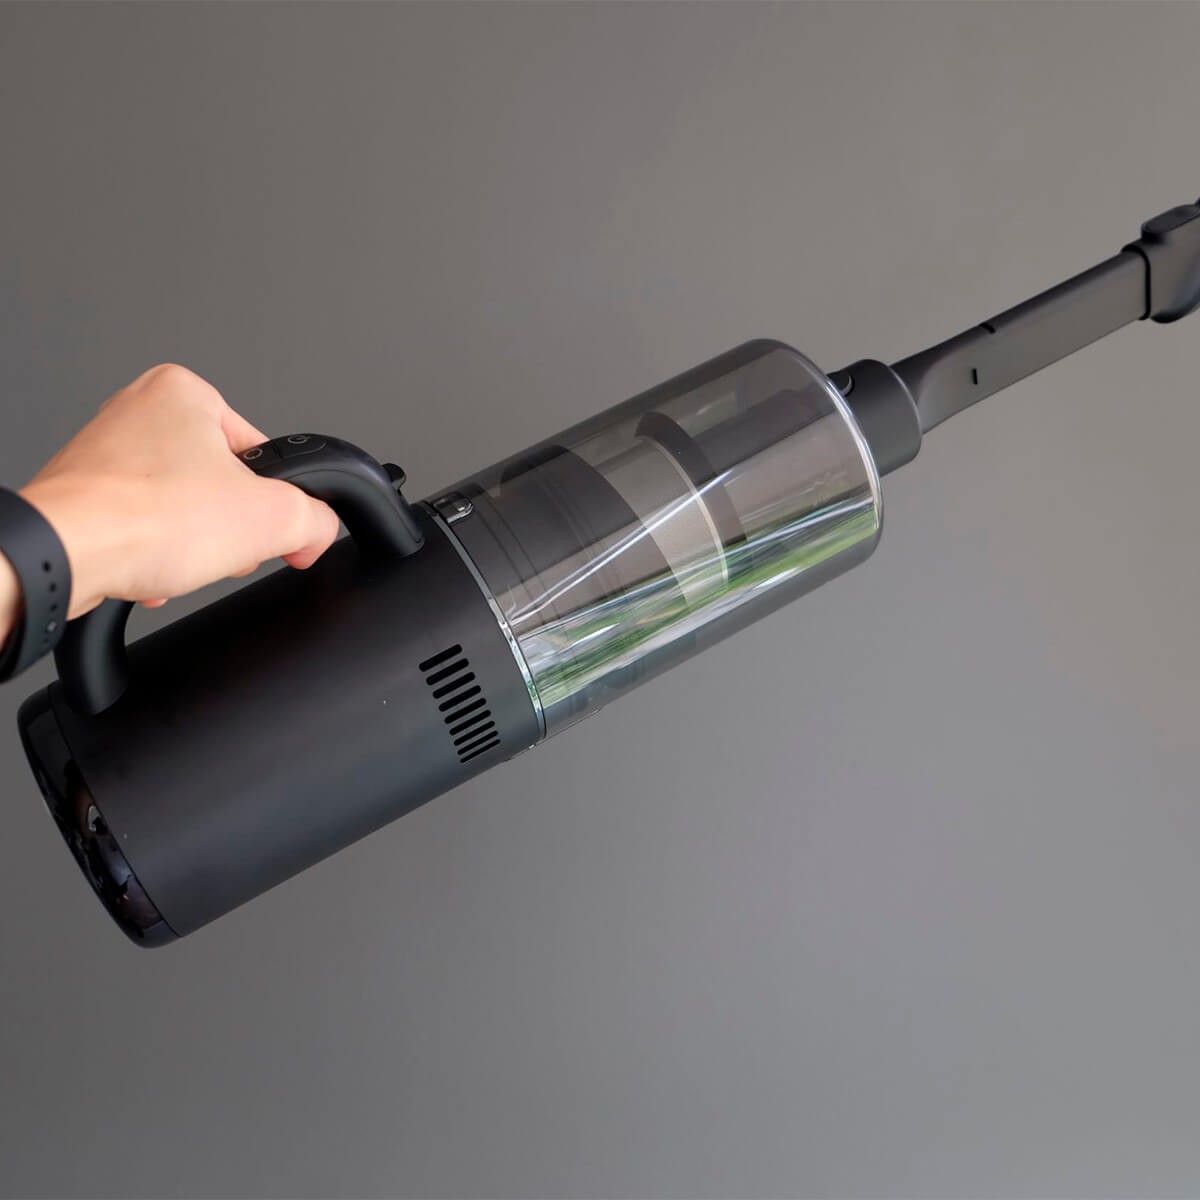 Пылесос Dreame Wet & Dry Vacuum Cleaner M12 (HHV3) отзывы - изображения 5